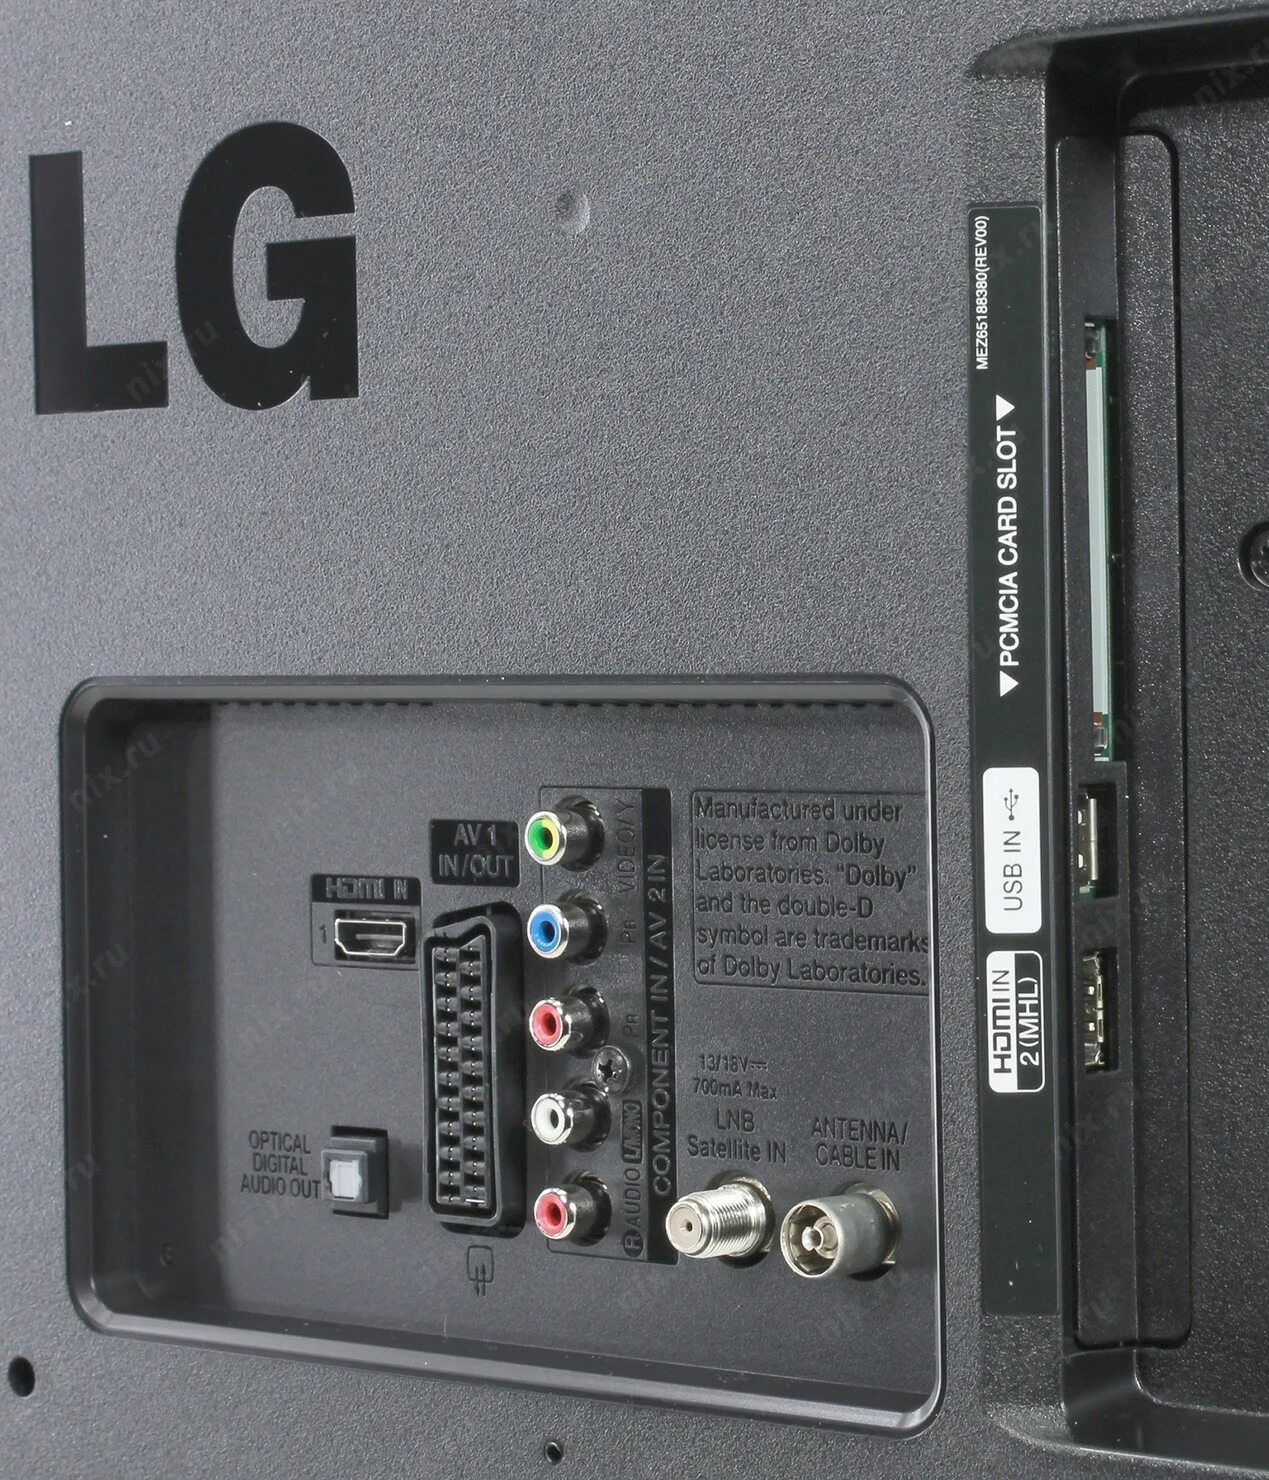 Телевизор LG 32lb552u. Разъемы телевизора LG. 42 Дюйма. Телевизор LG 42lb552v 42".